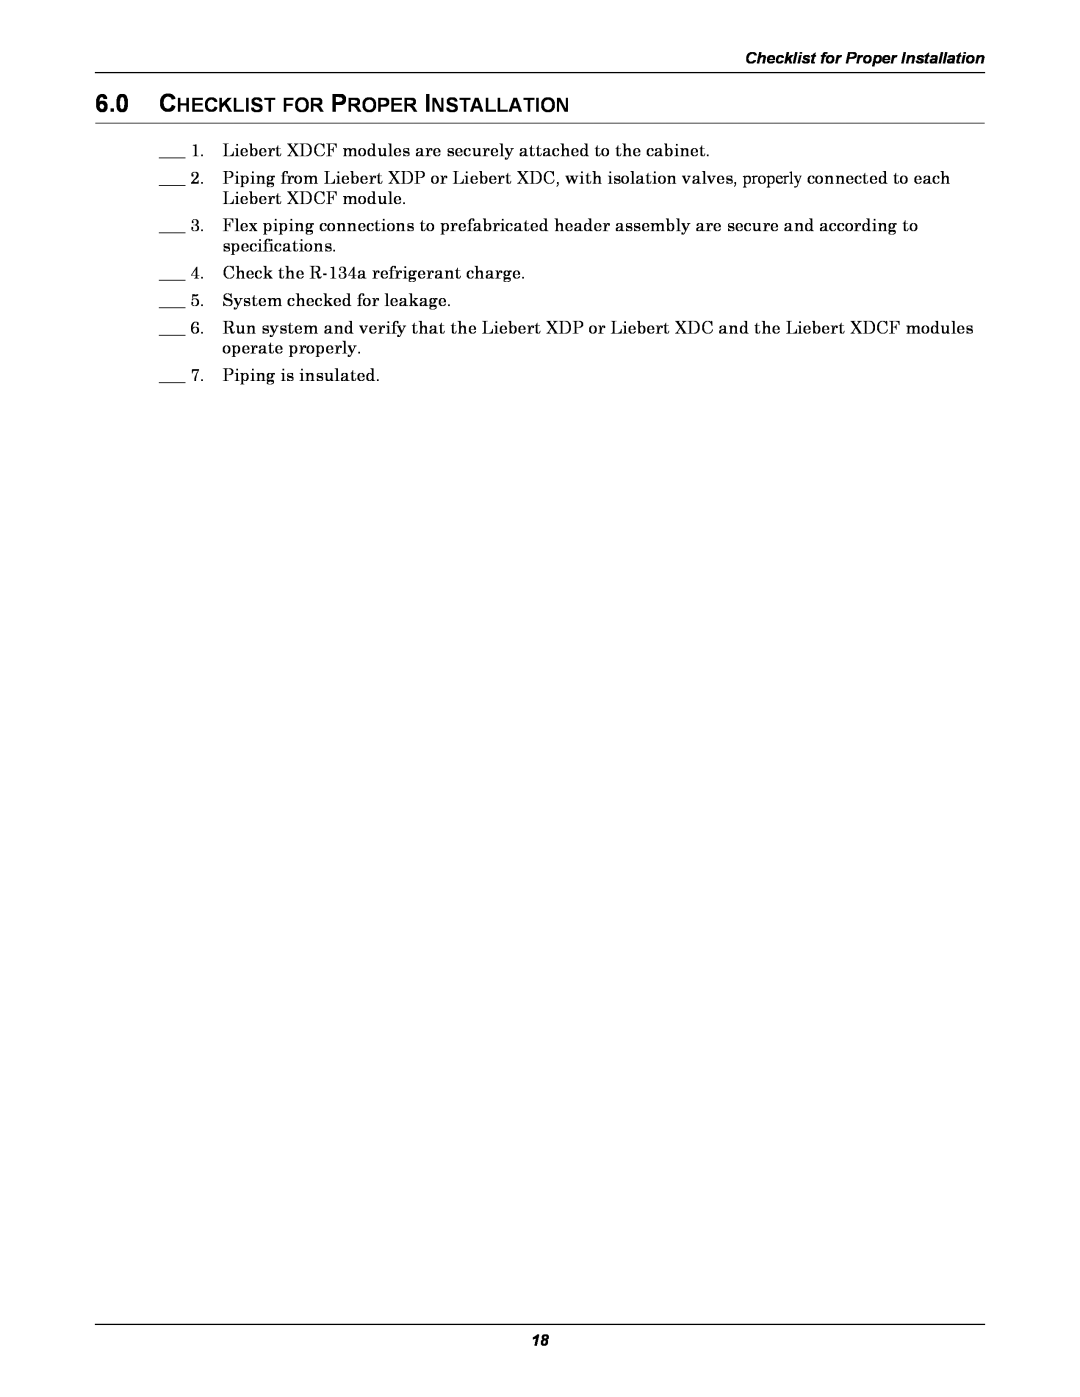 Emerson XDCF user manual Checklist For Proper Installation 